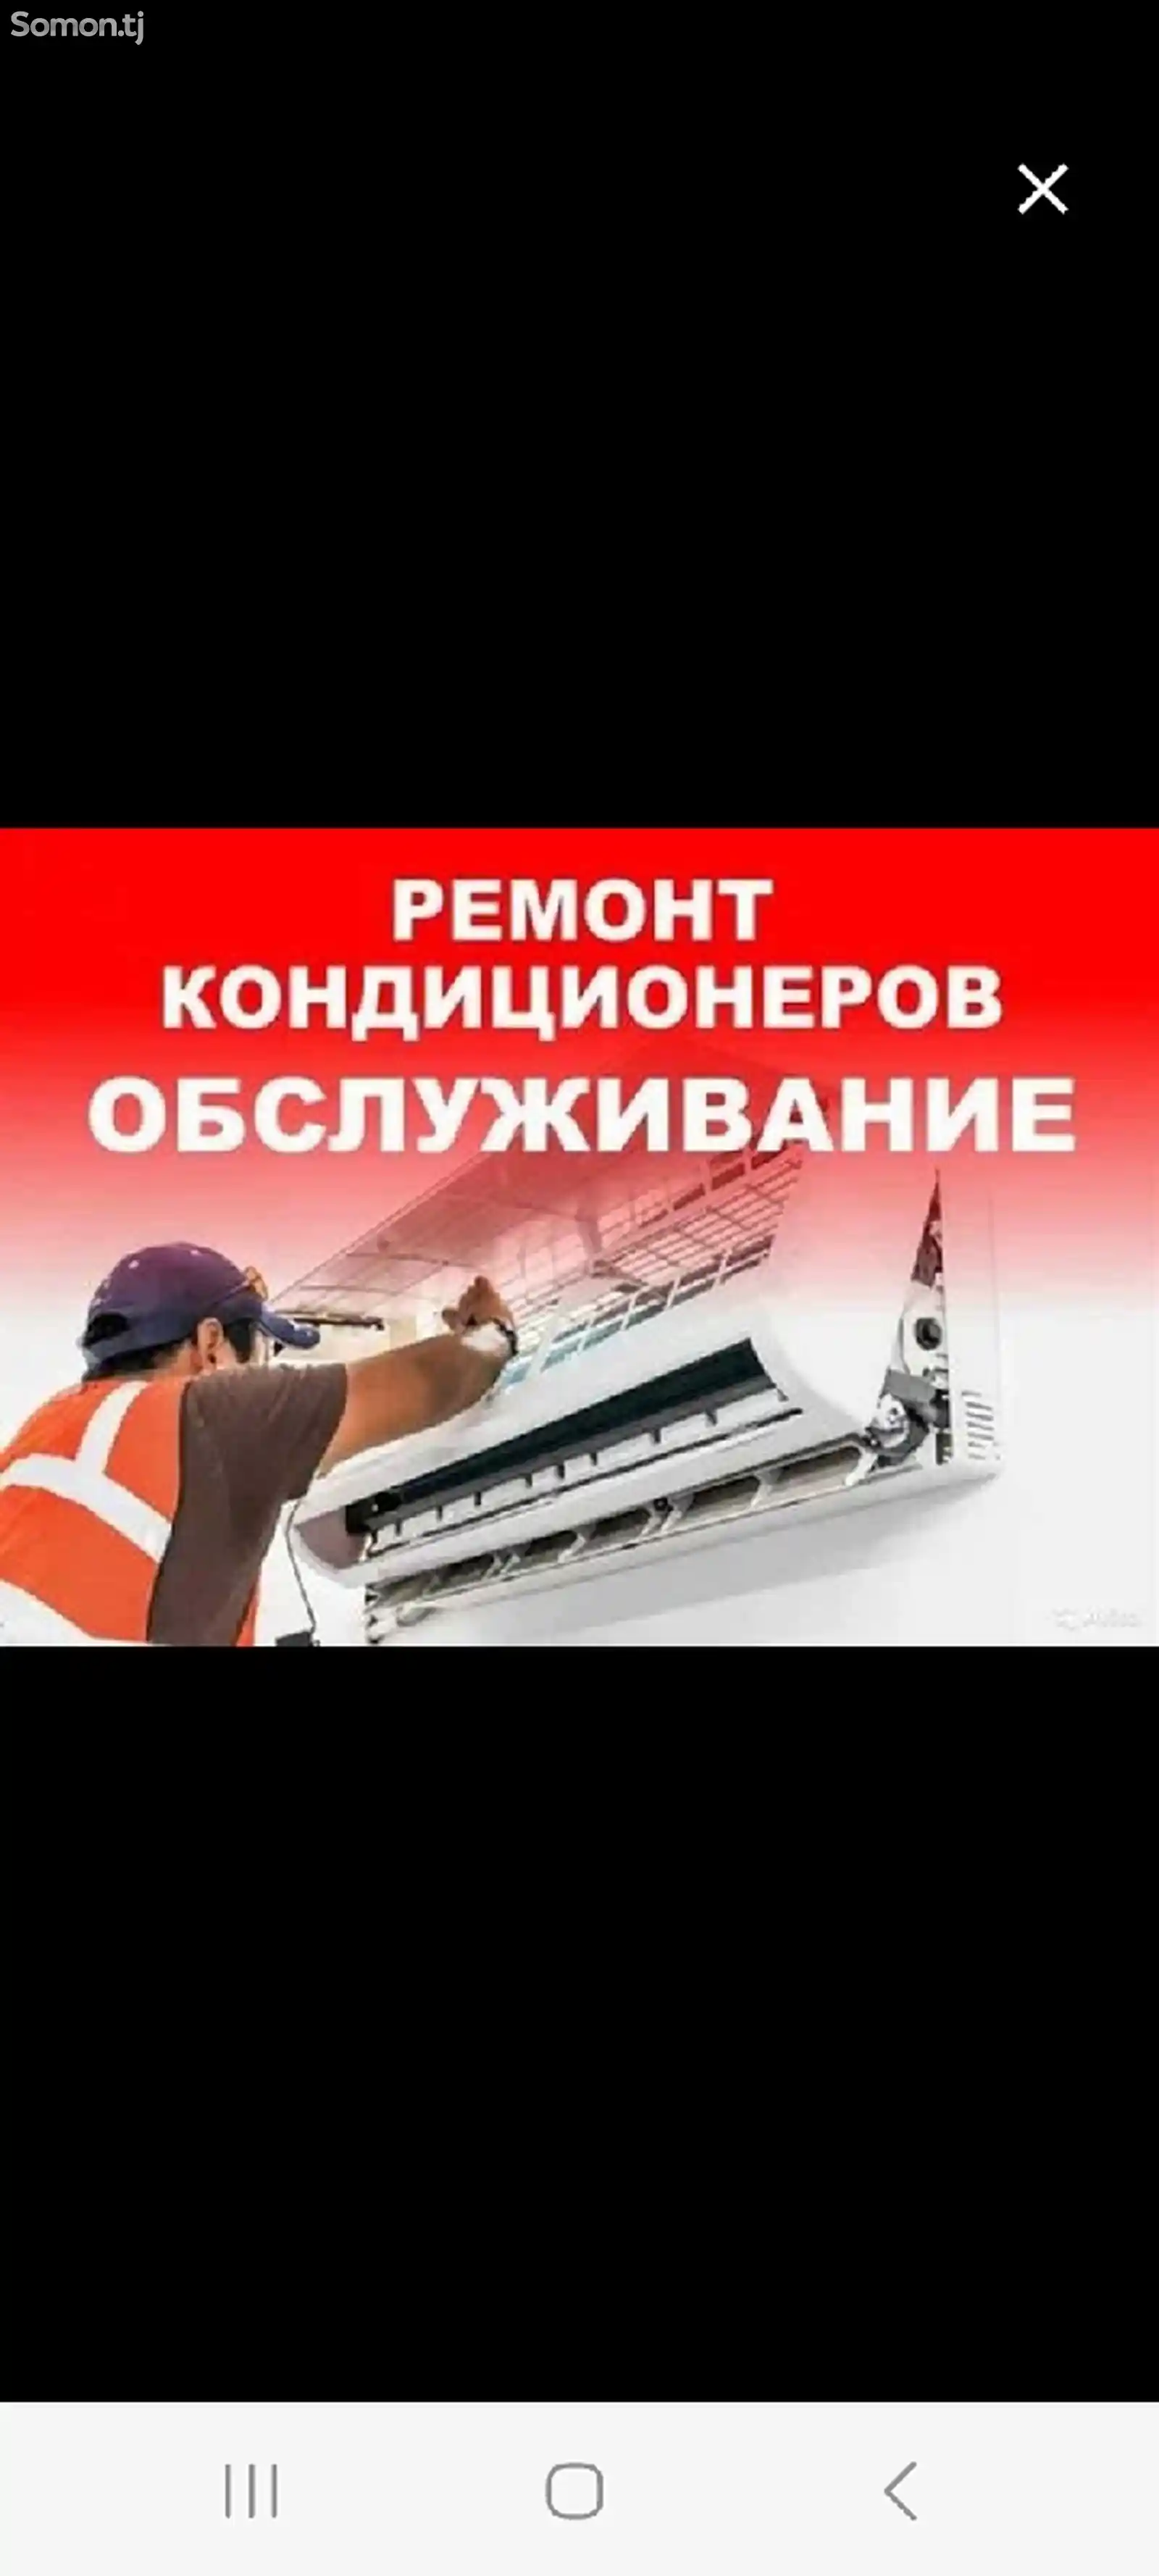 Заправка и ремонт кондиционеров в Душанбе-1